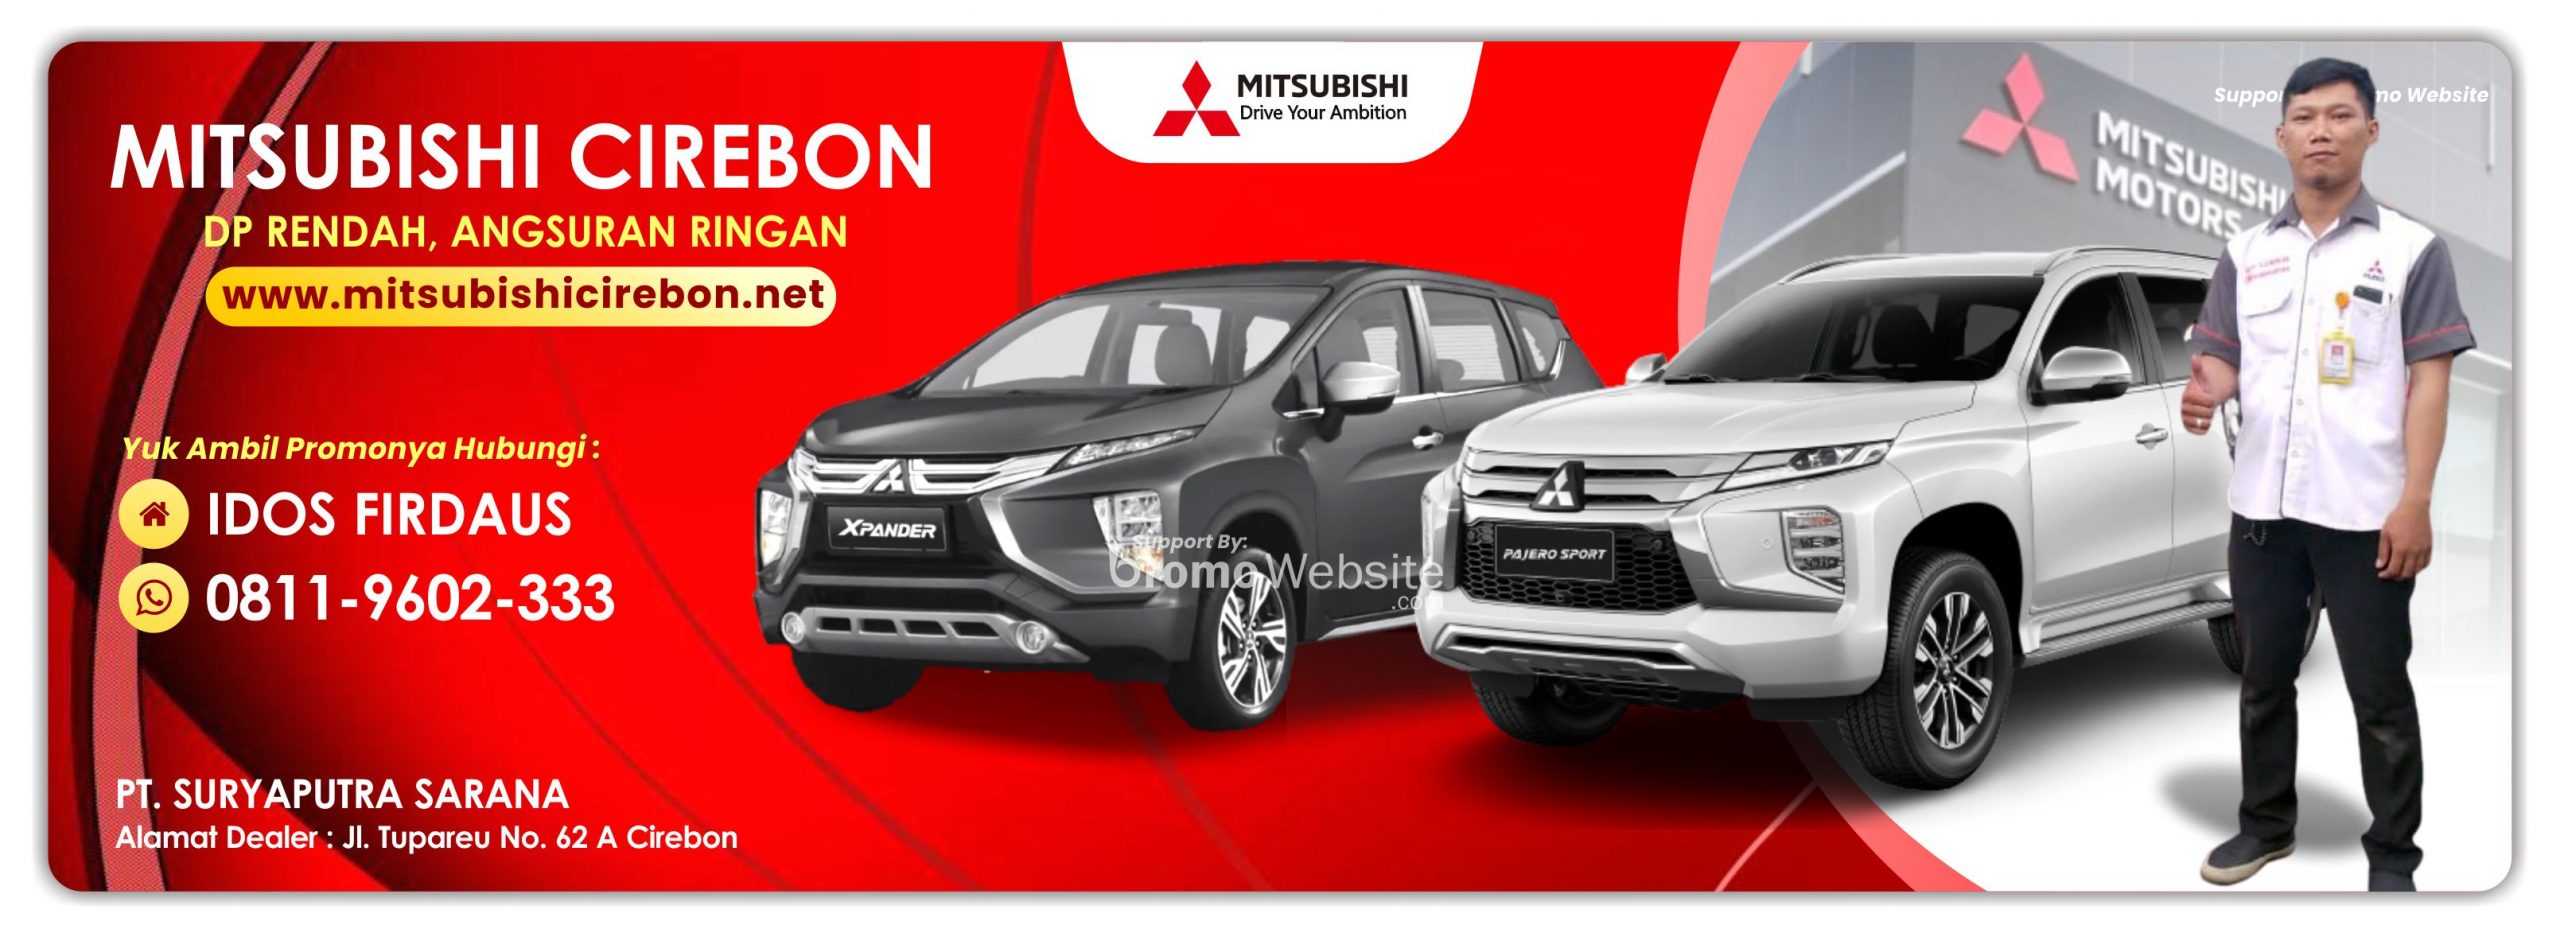 Dealer Mitsubishi Cirebon Daftar Harga Otr Cash Kredit Mobil Baru